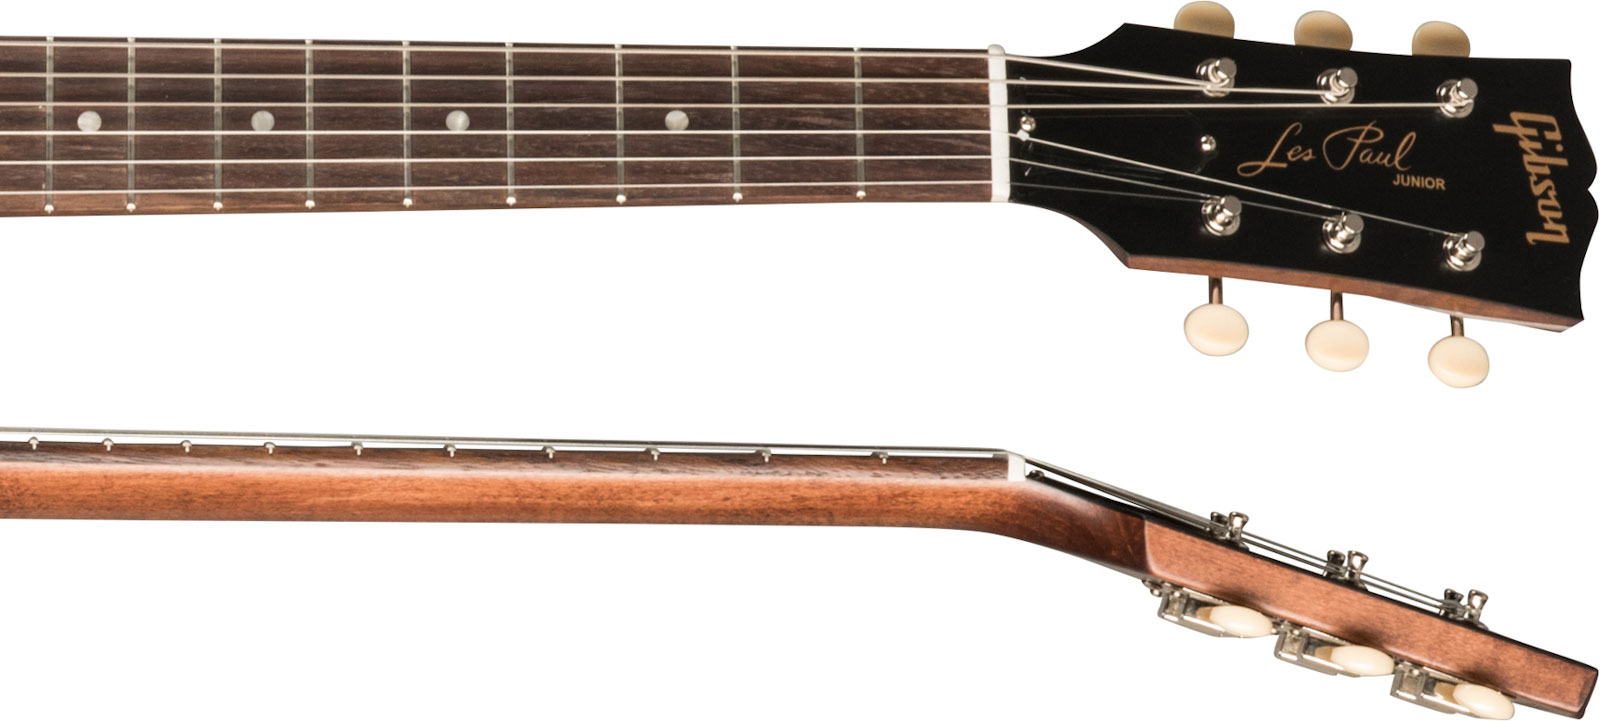 Gibson Les Paul Junior Tribute Dc Modern P90 - Worn Brown - Guitarra eléctrica de doble corte. - Variation 3